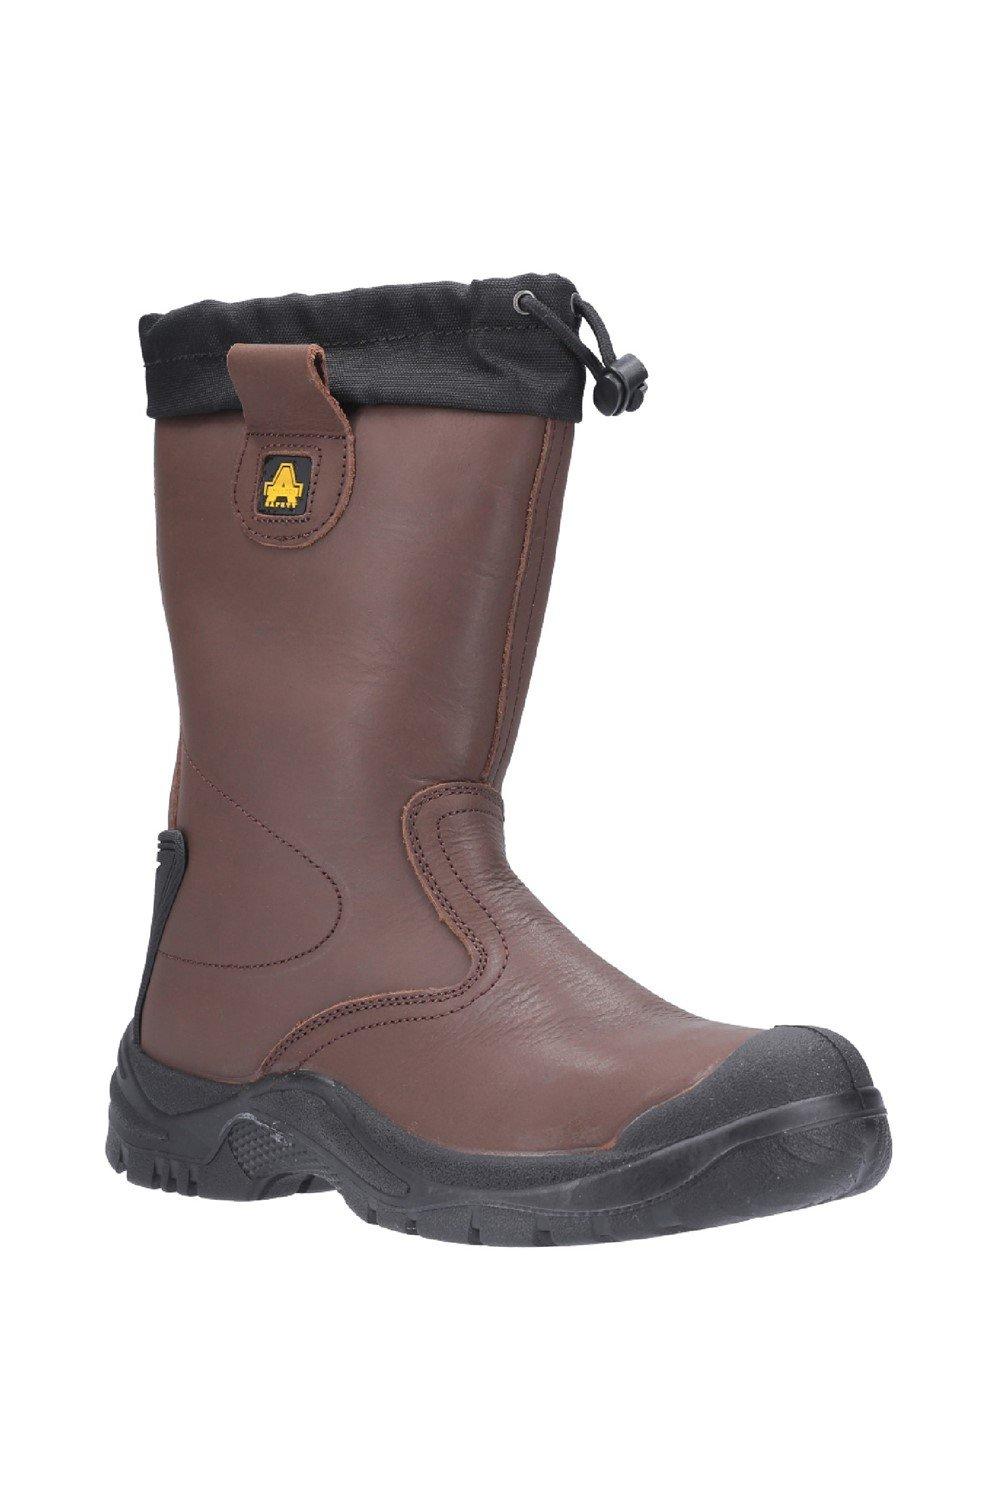 Защитные ботинки для монтажников 'FS245' Amblers Safety, коричневый